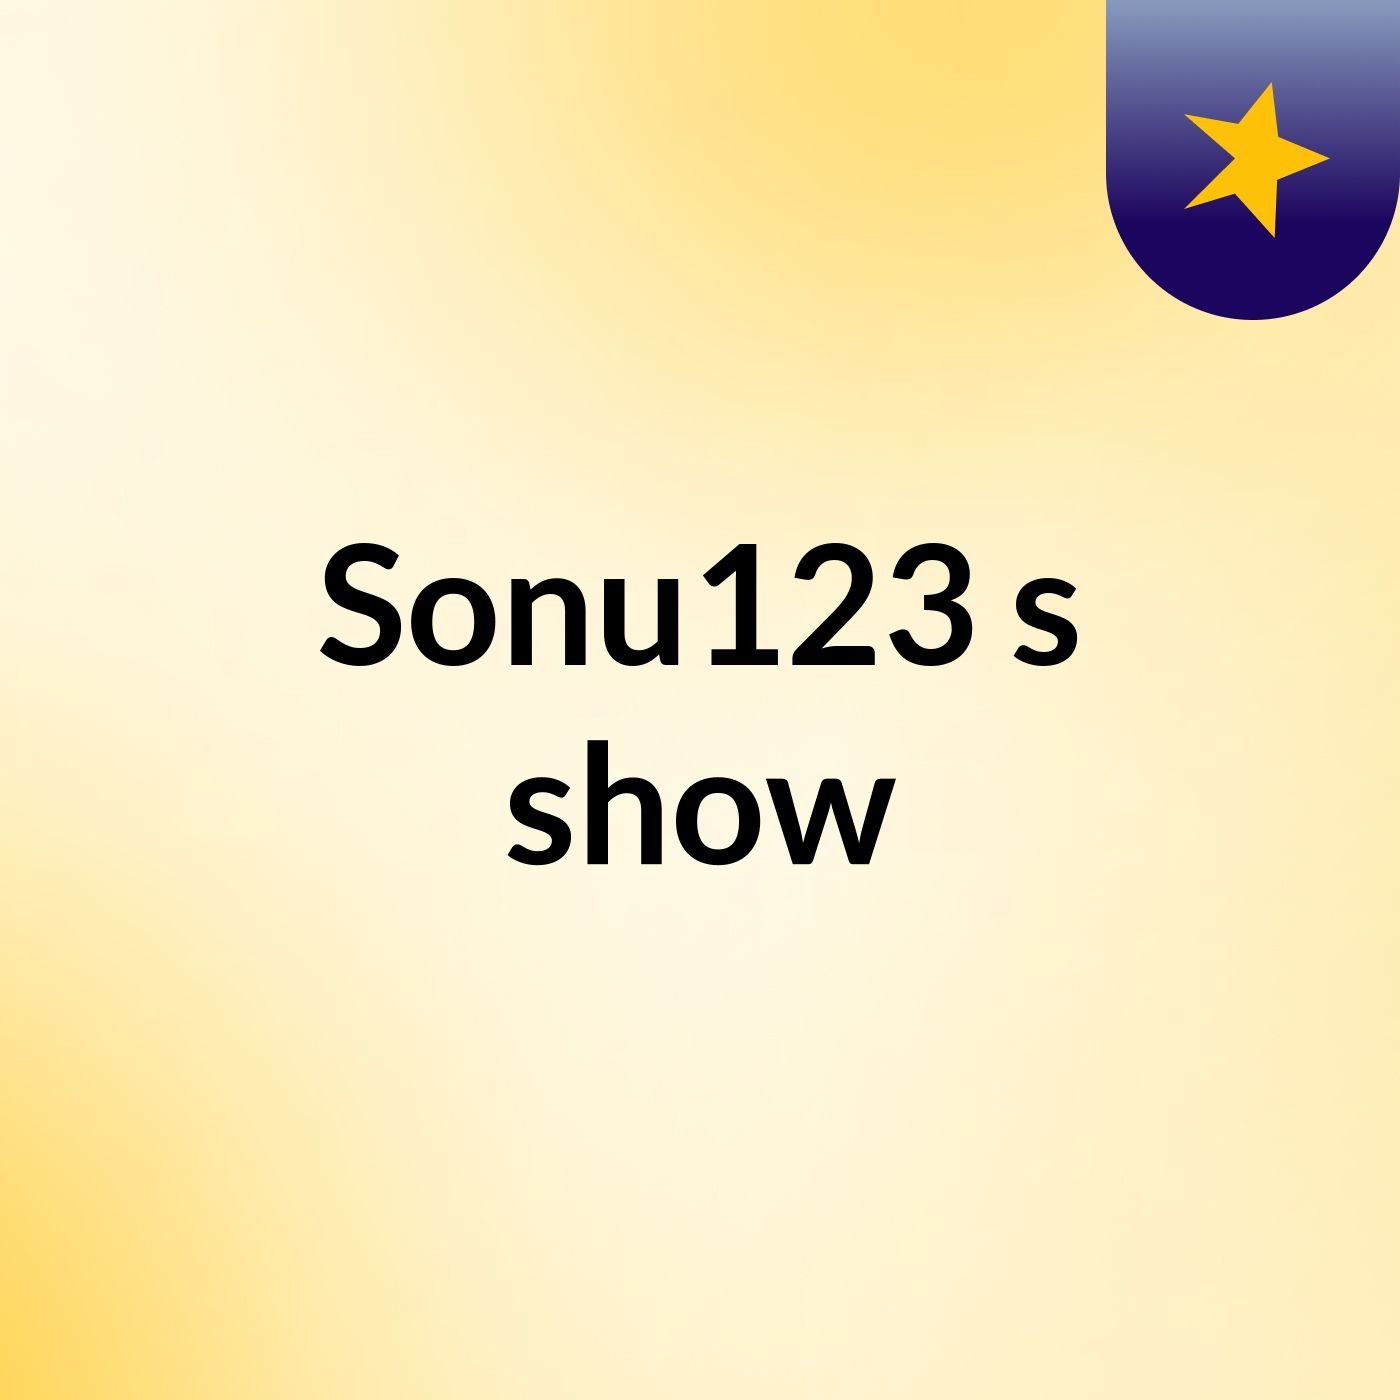 Sonu123's show